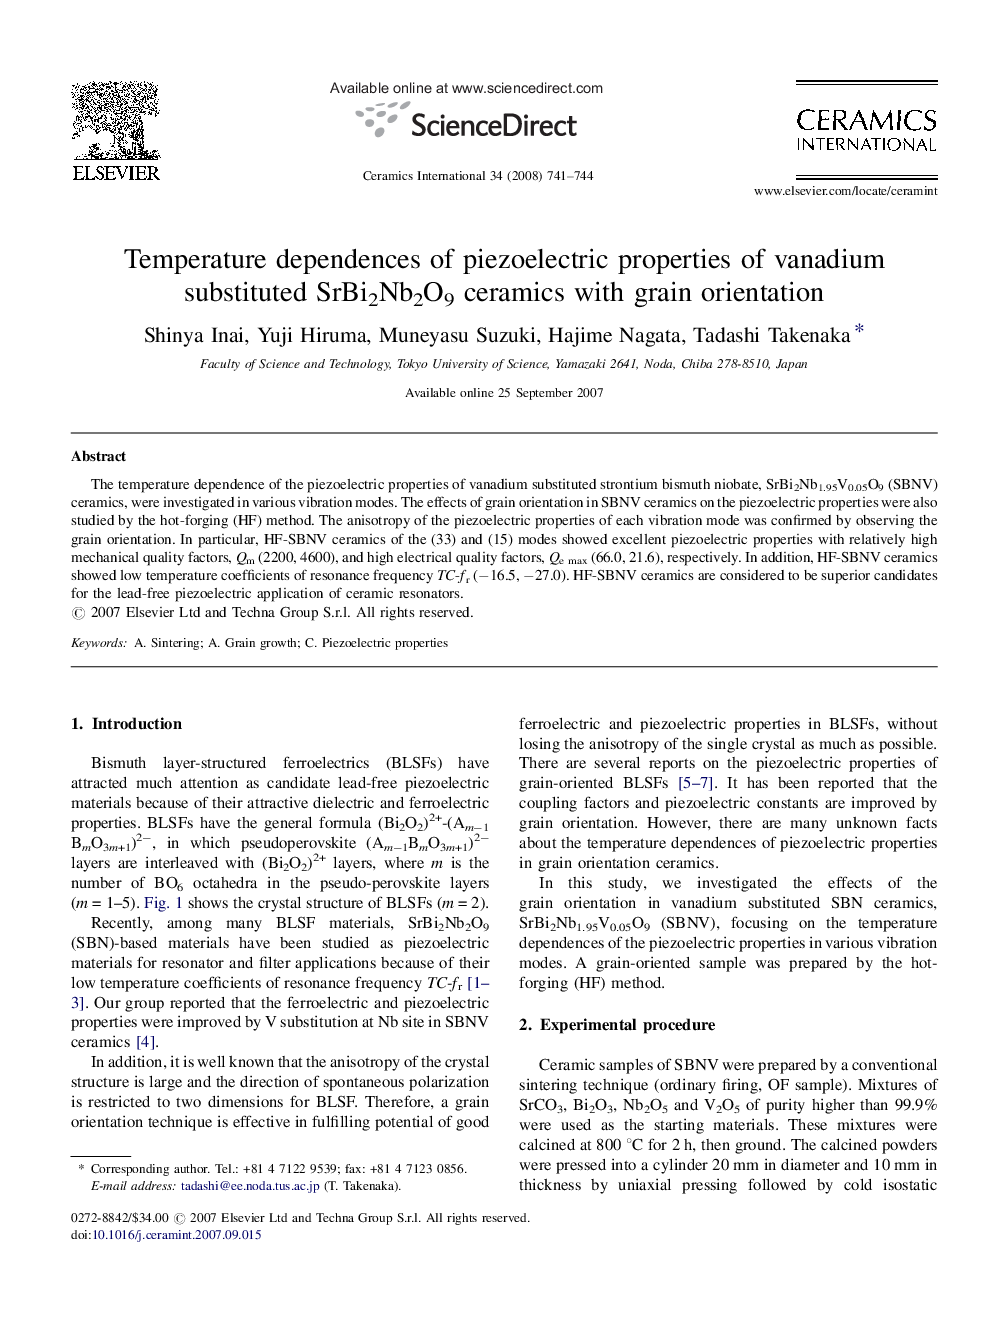 Temperature dependences of piezoelectric properties of vanadium substituted SrBi2Nb2O9 ceramics with grain orientation